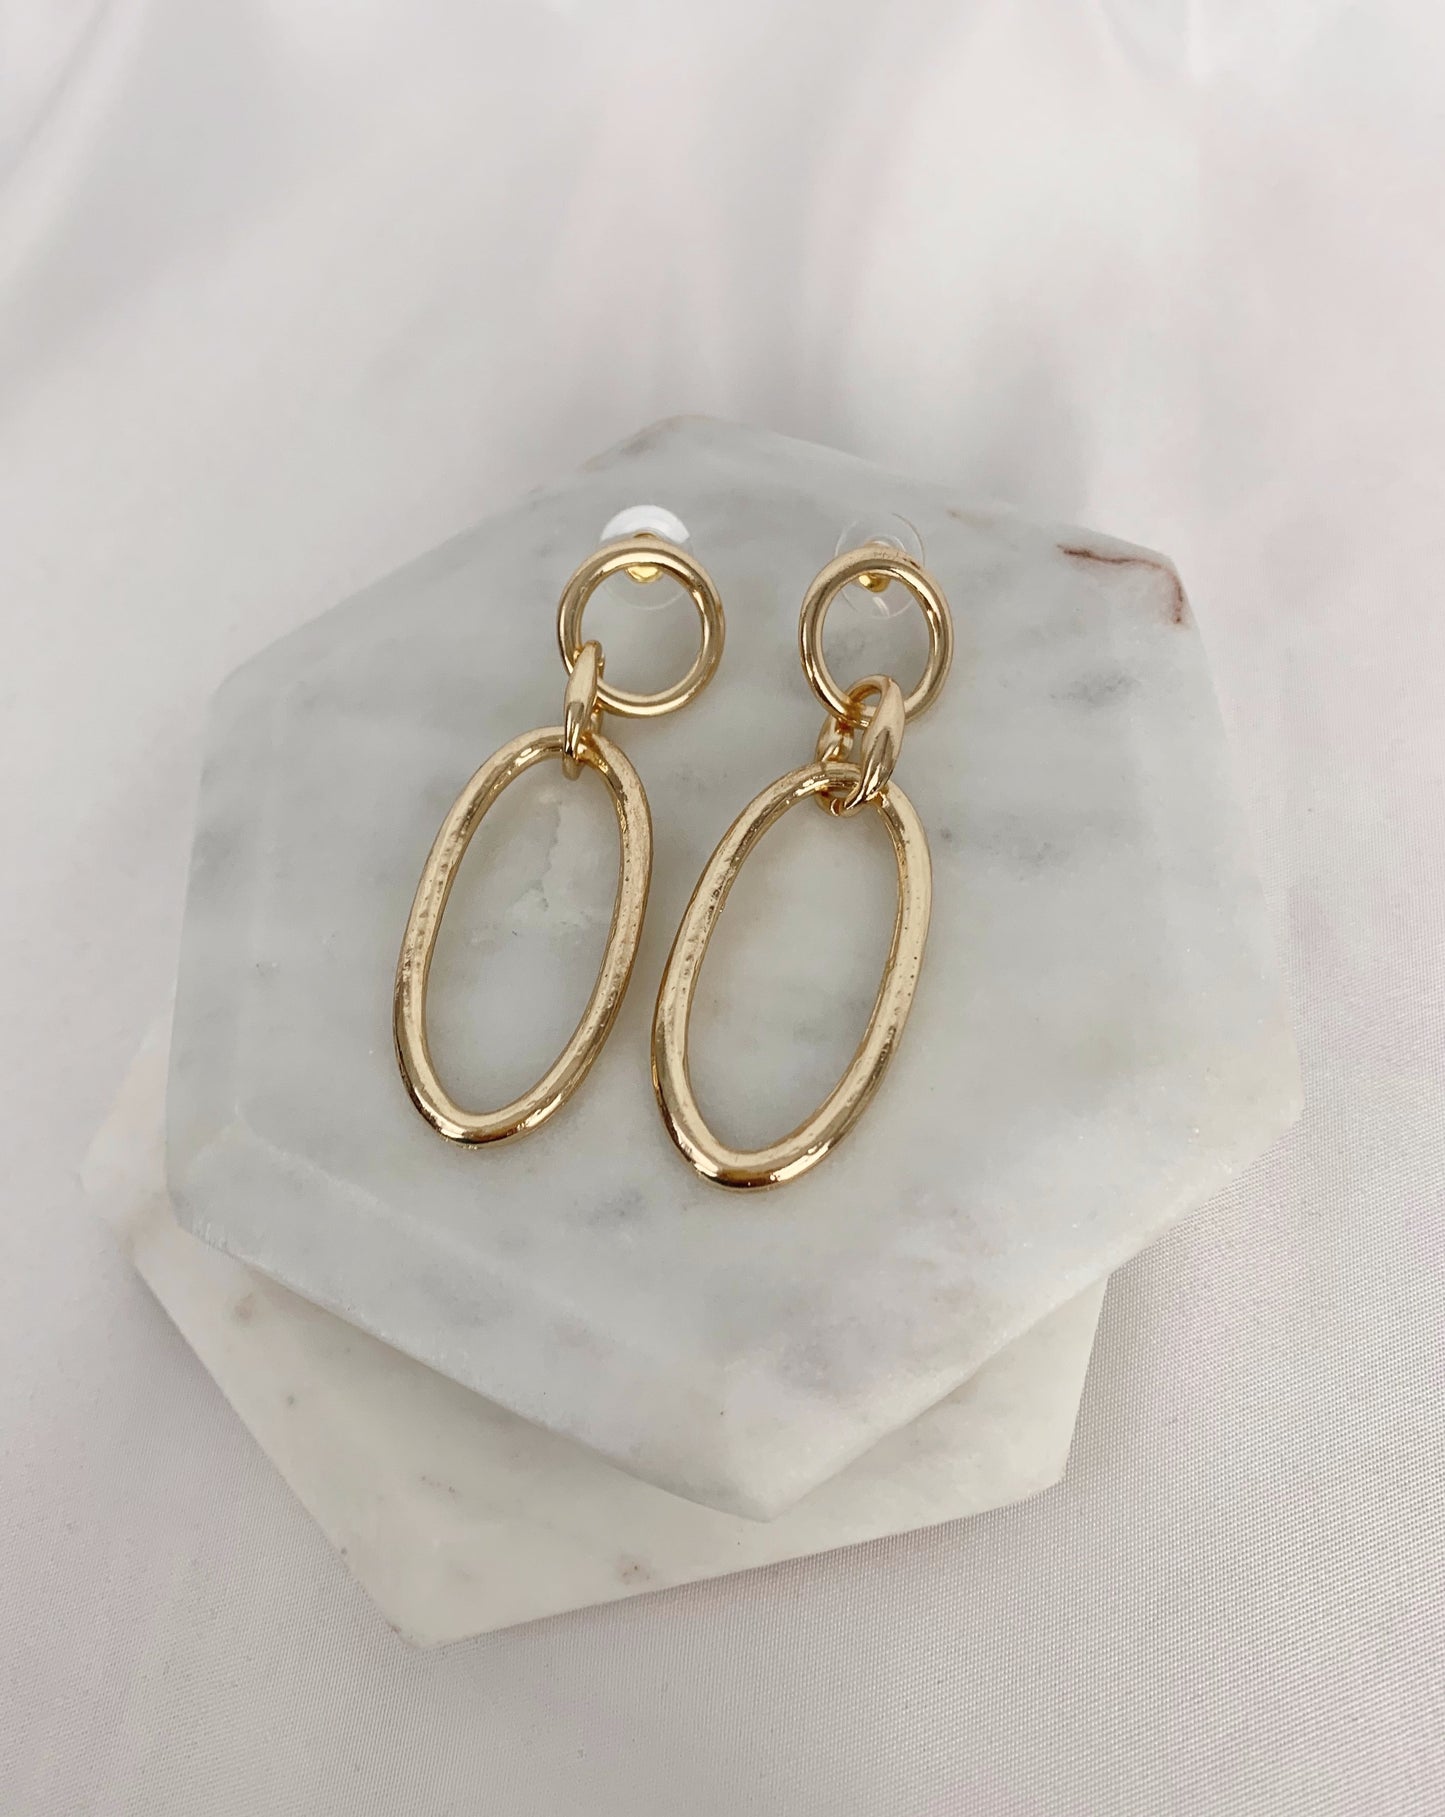 “Pia” earrings